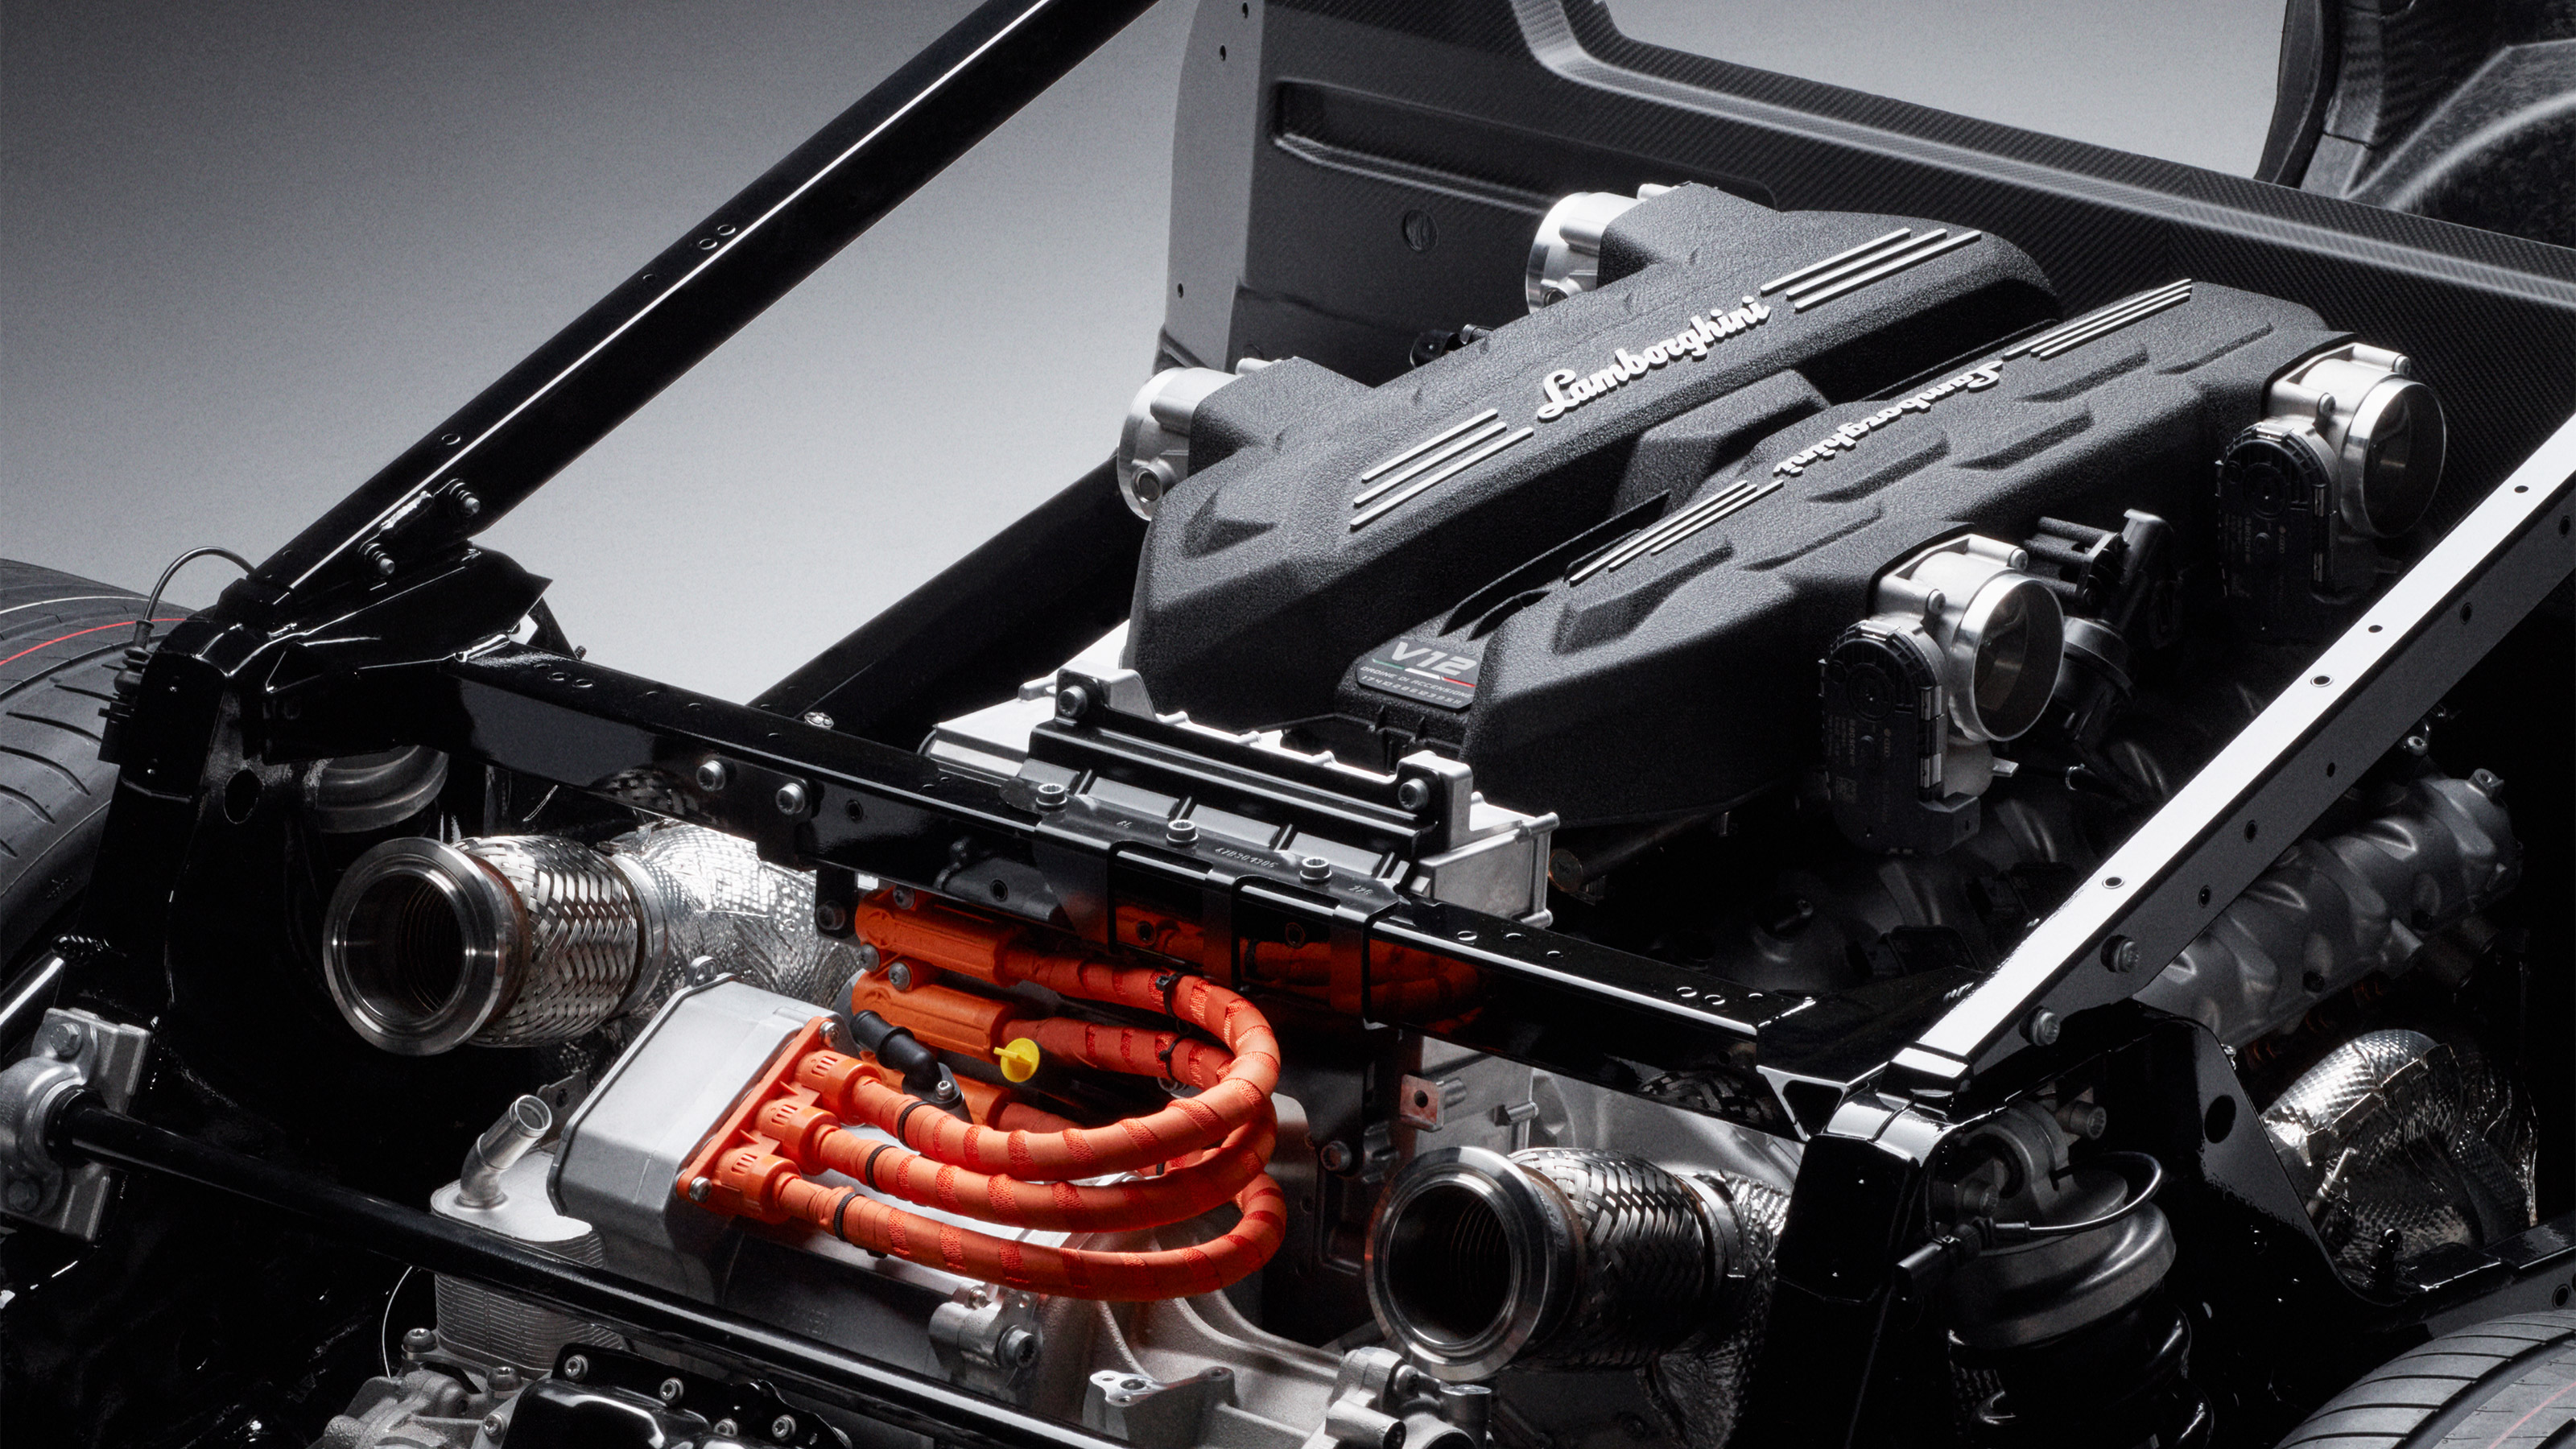 LB744: Những thông tin đầu tiên về siêu xe hybrid 1000 mã lực của Lamborghini